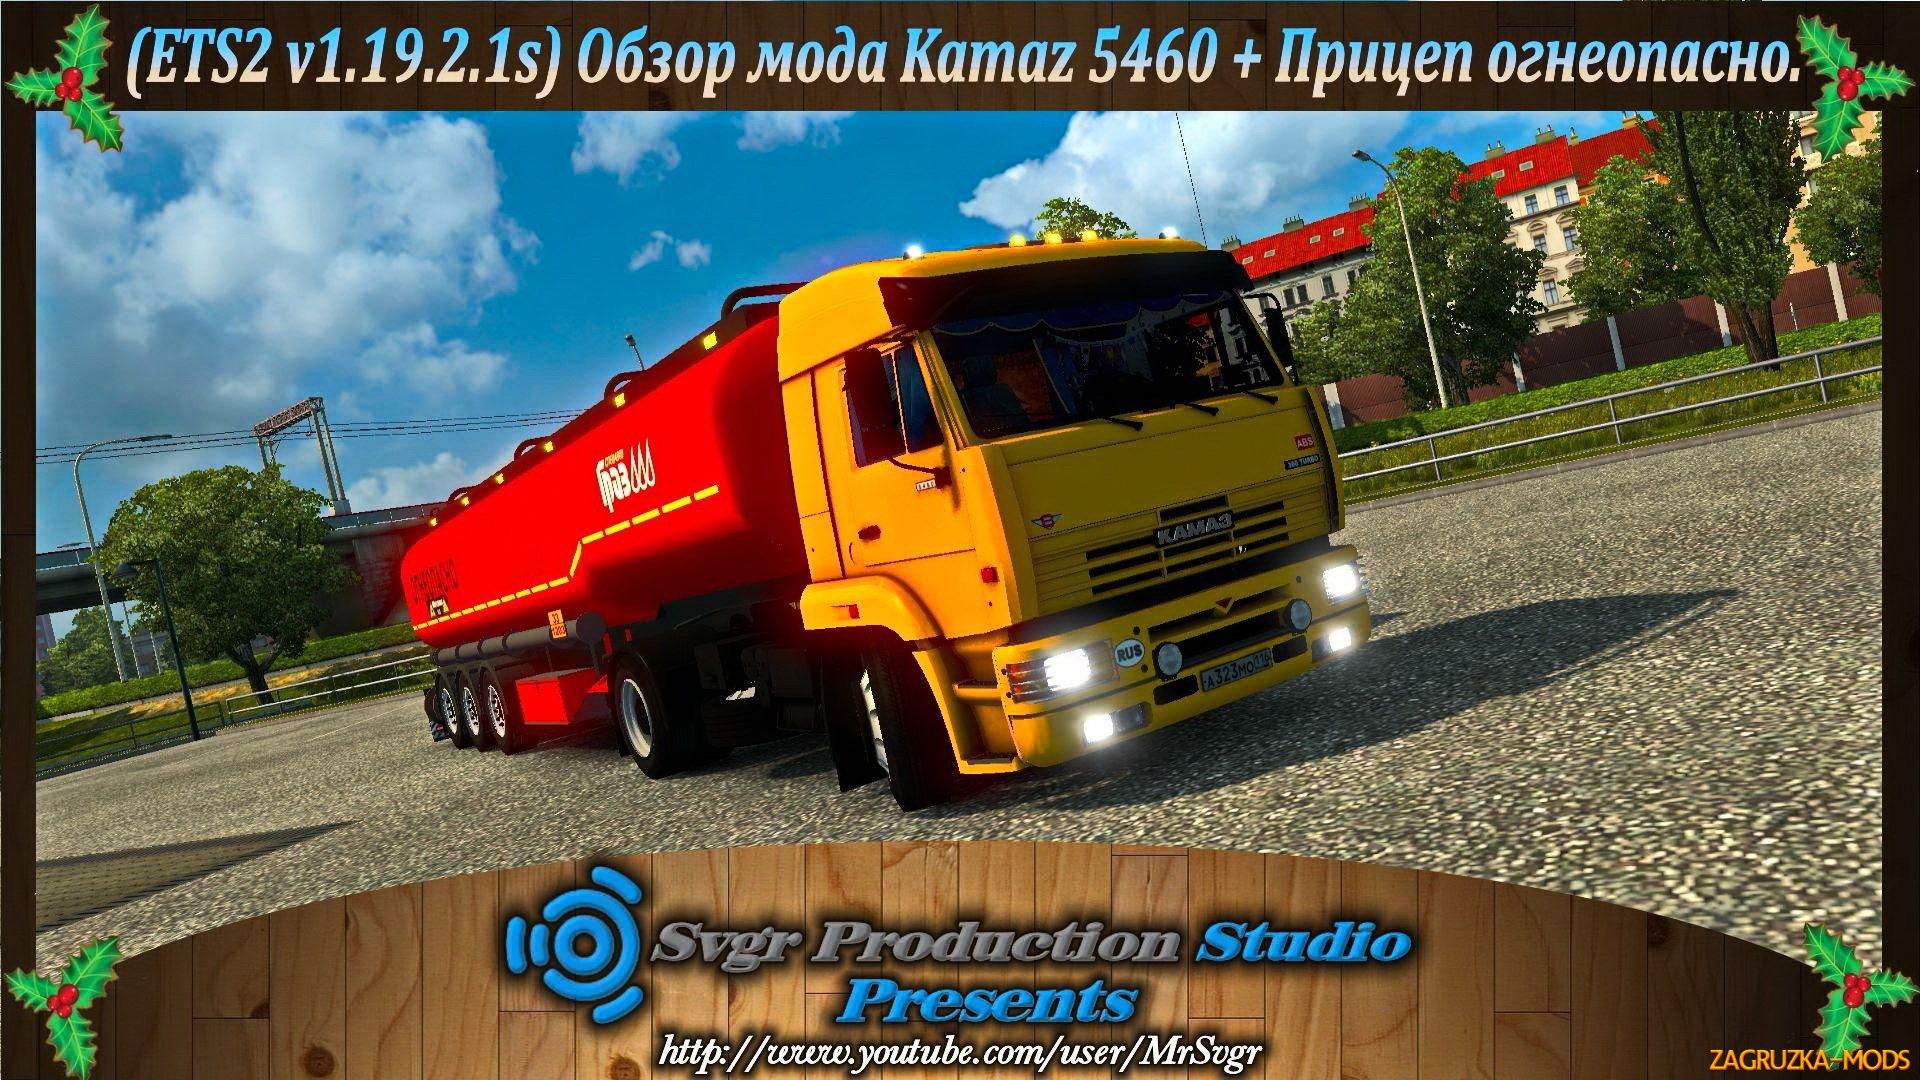 Kamaz 5460 + Trailer Flammable v1.0 for ETS 2